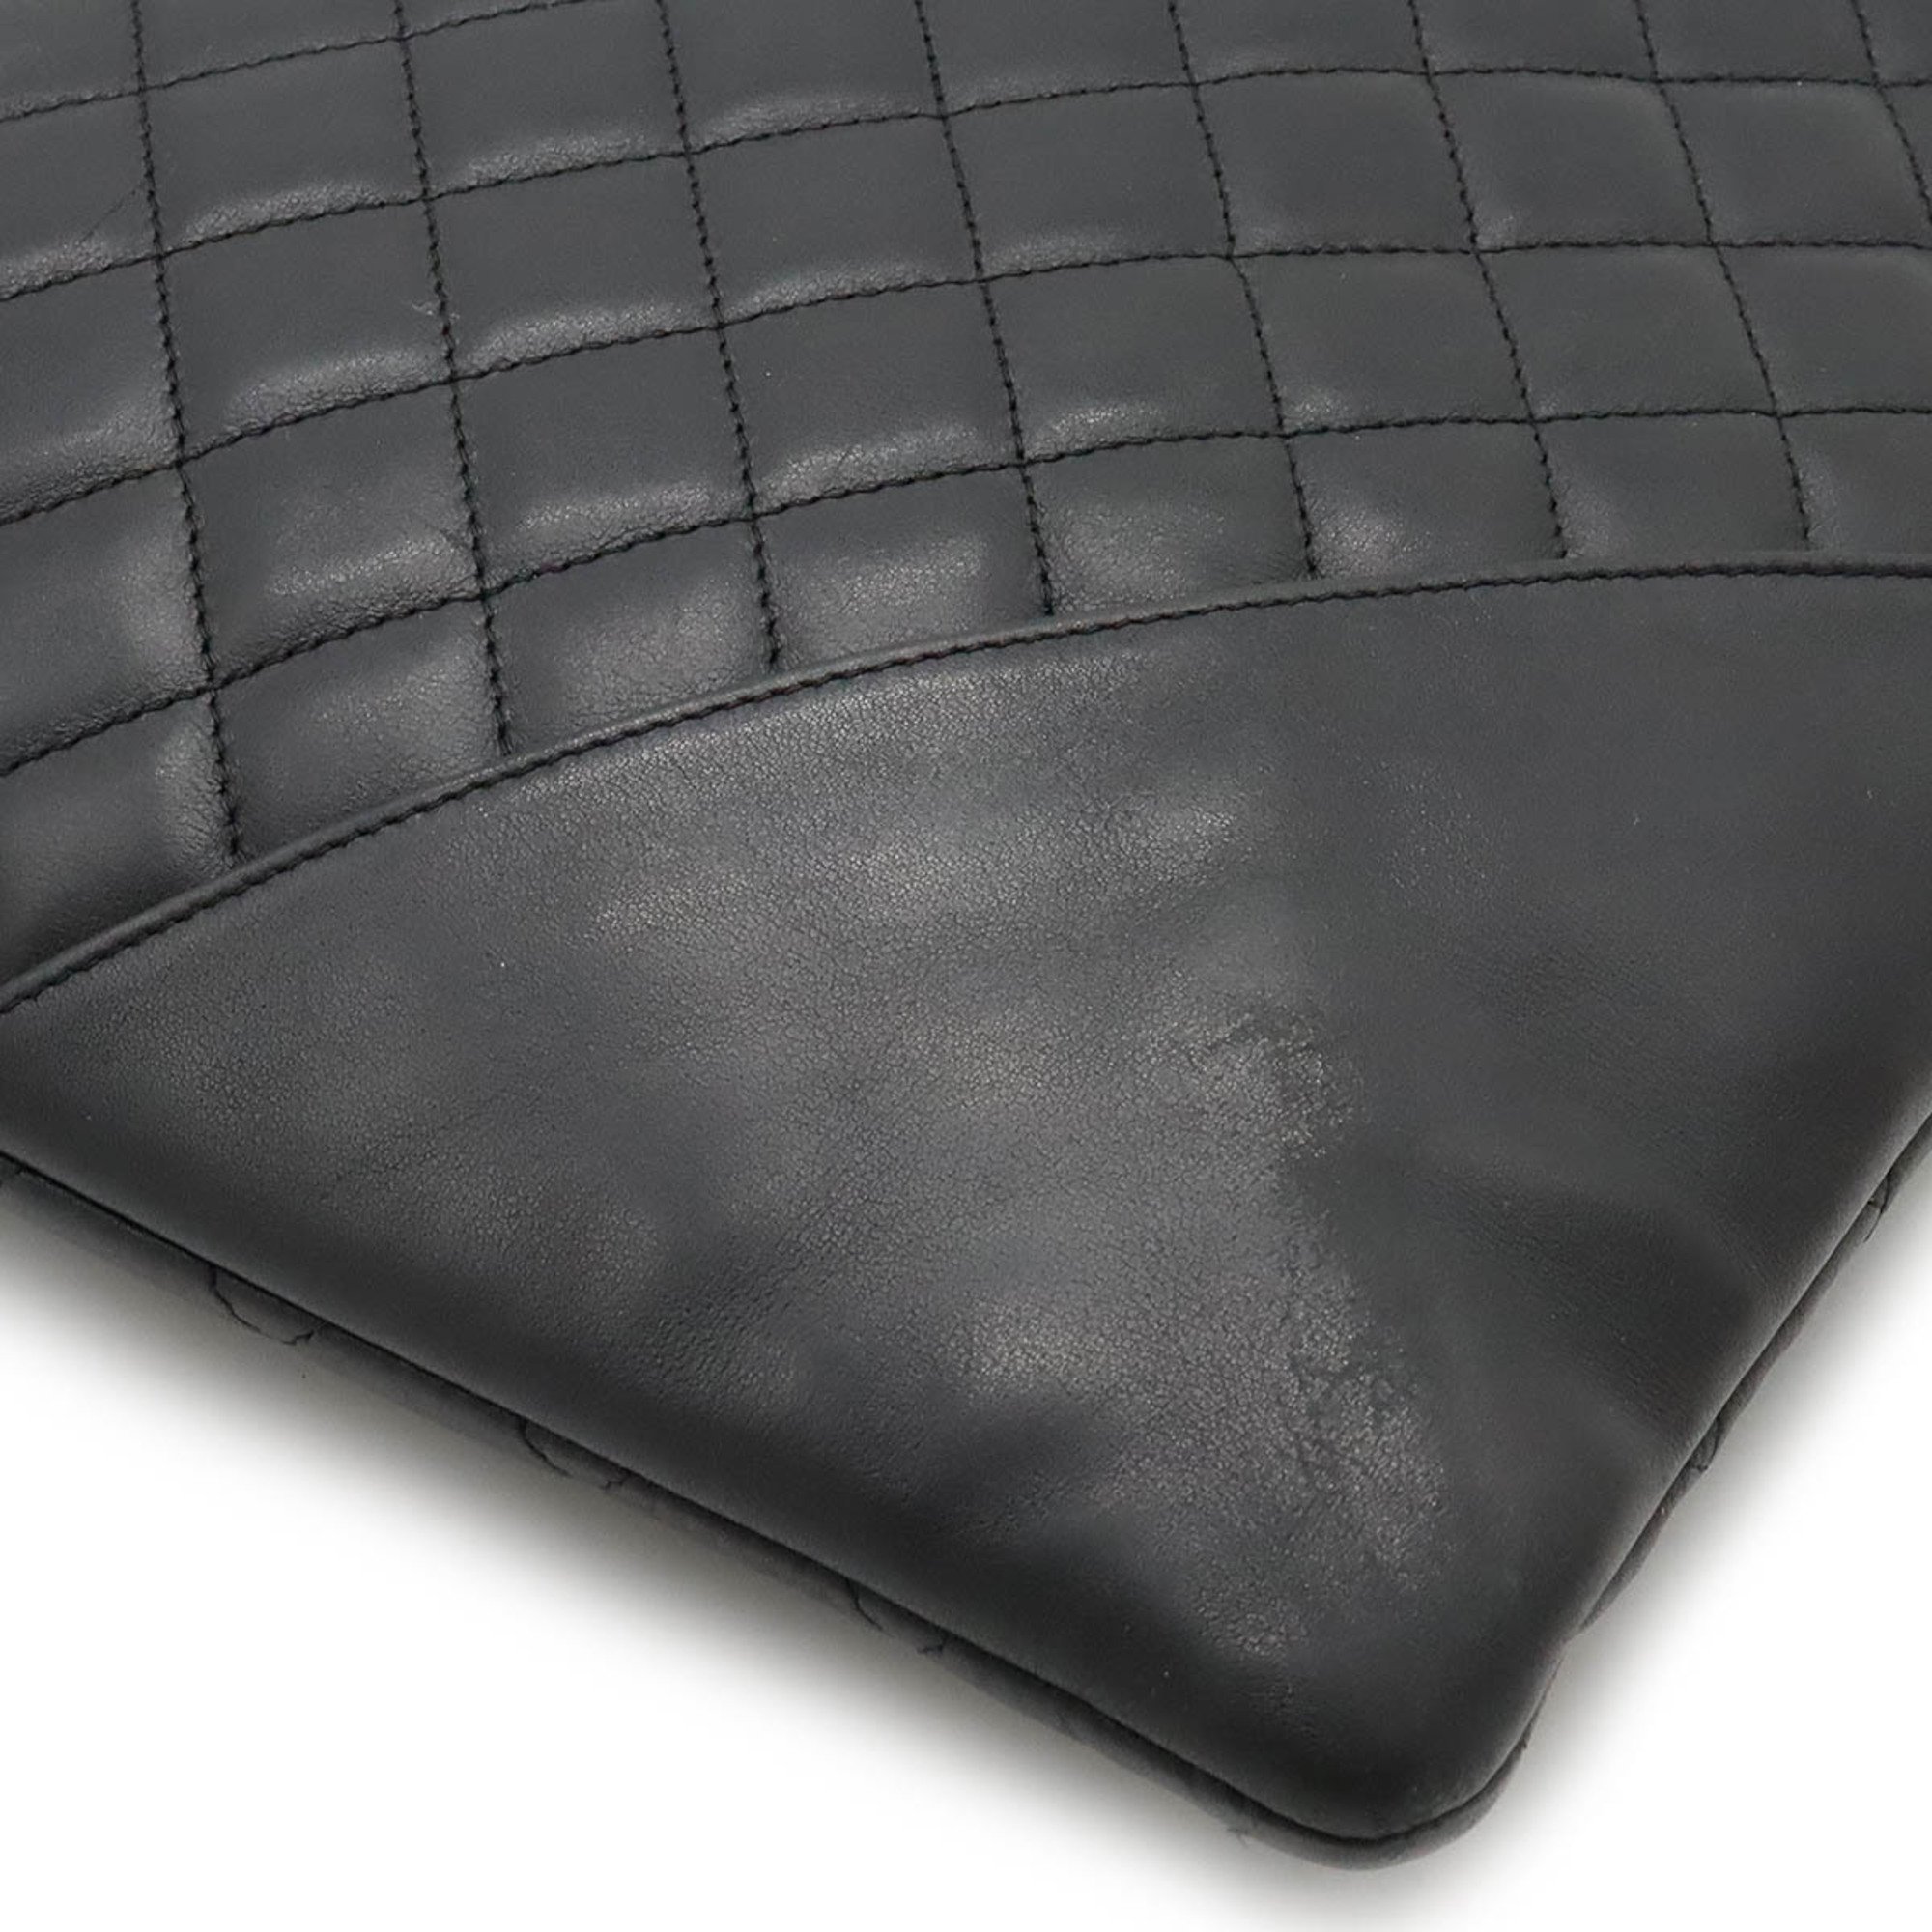 CHANEL Cambon Line Coco Mark Flat Tote Bag Soft Calf Black White A28126